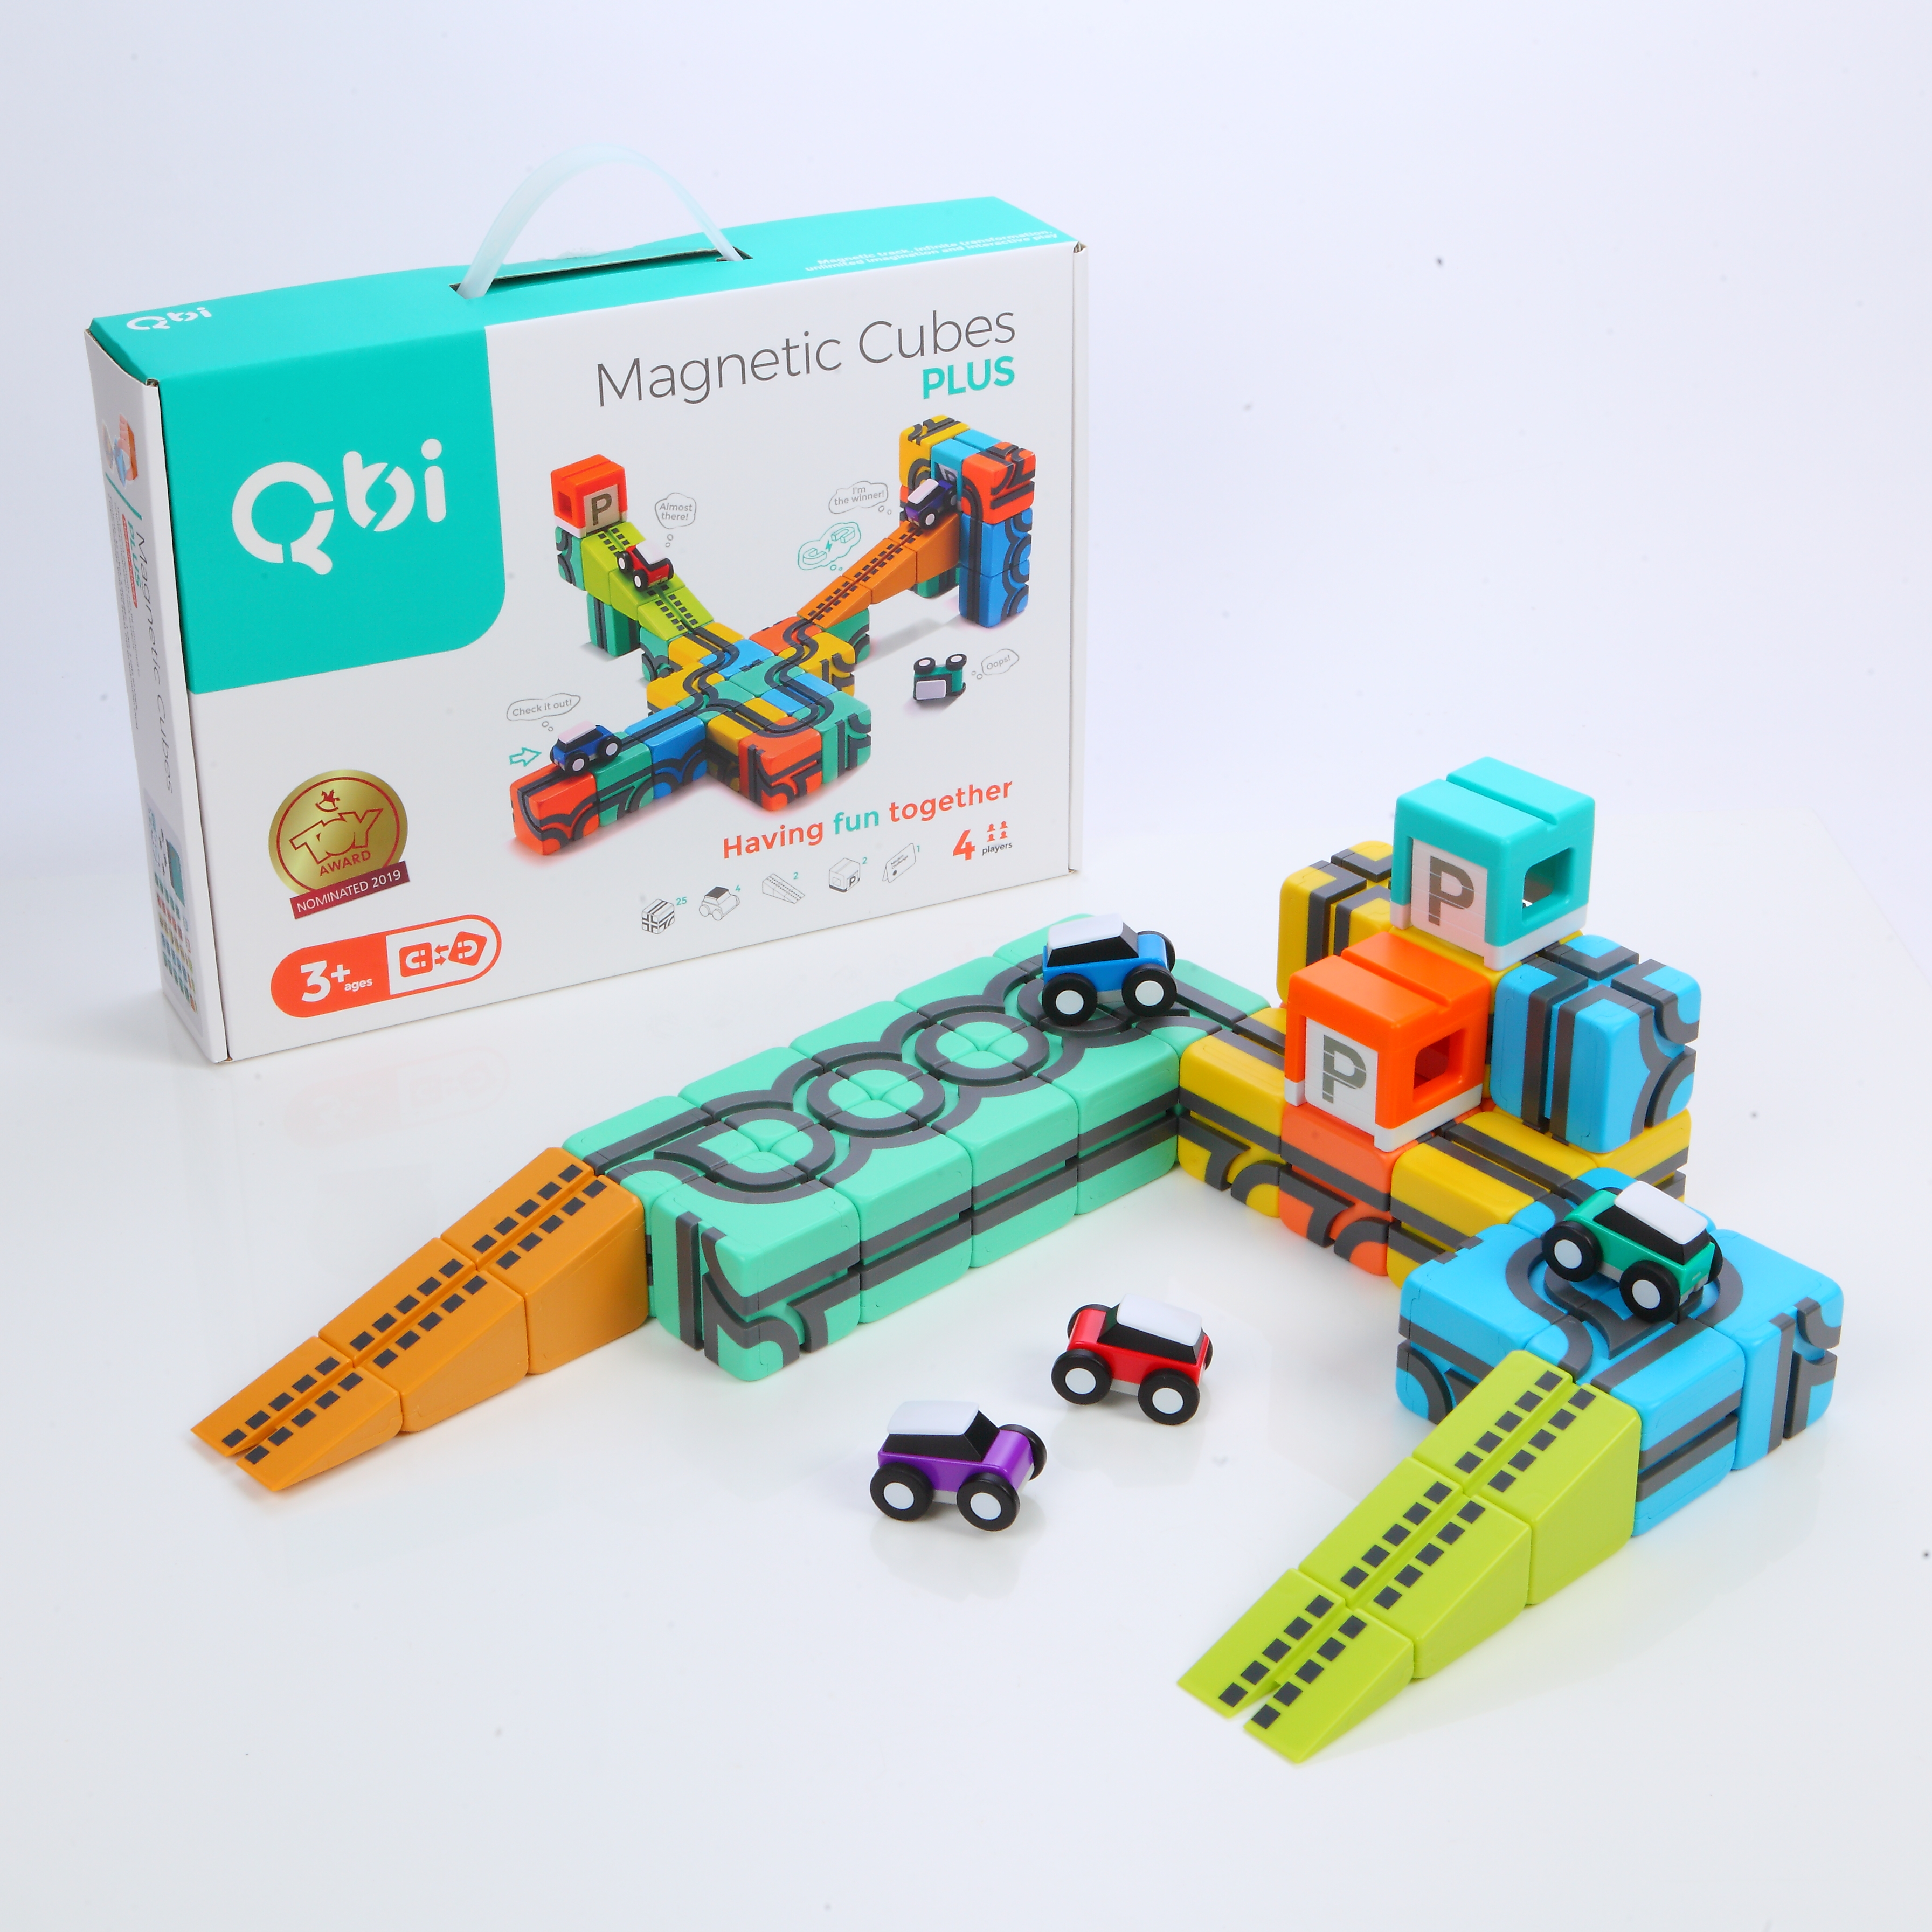 Qbitoy Magnetic Cubes Plus: magnetische Bausteine mit Spielzeugautos mit Rückzugsmotor. KiTa-Spielewelt